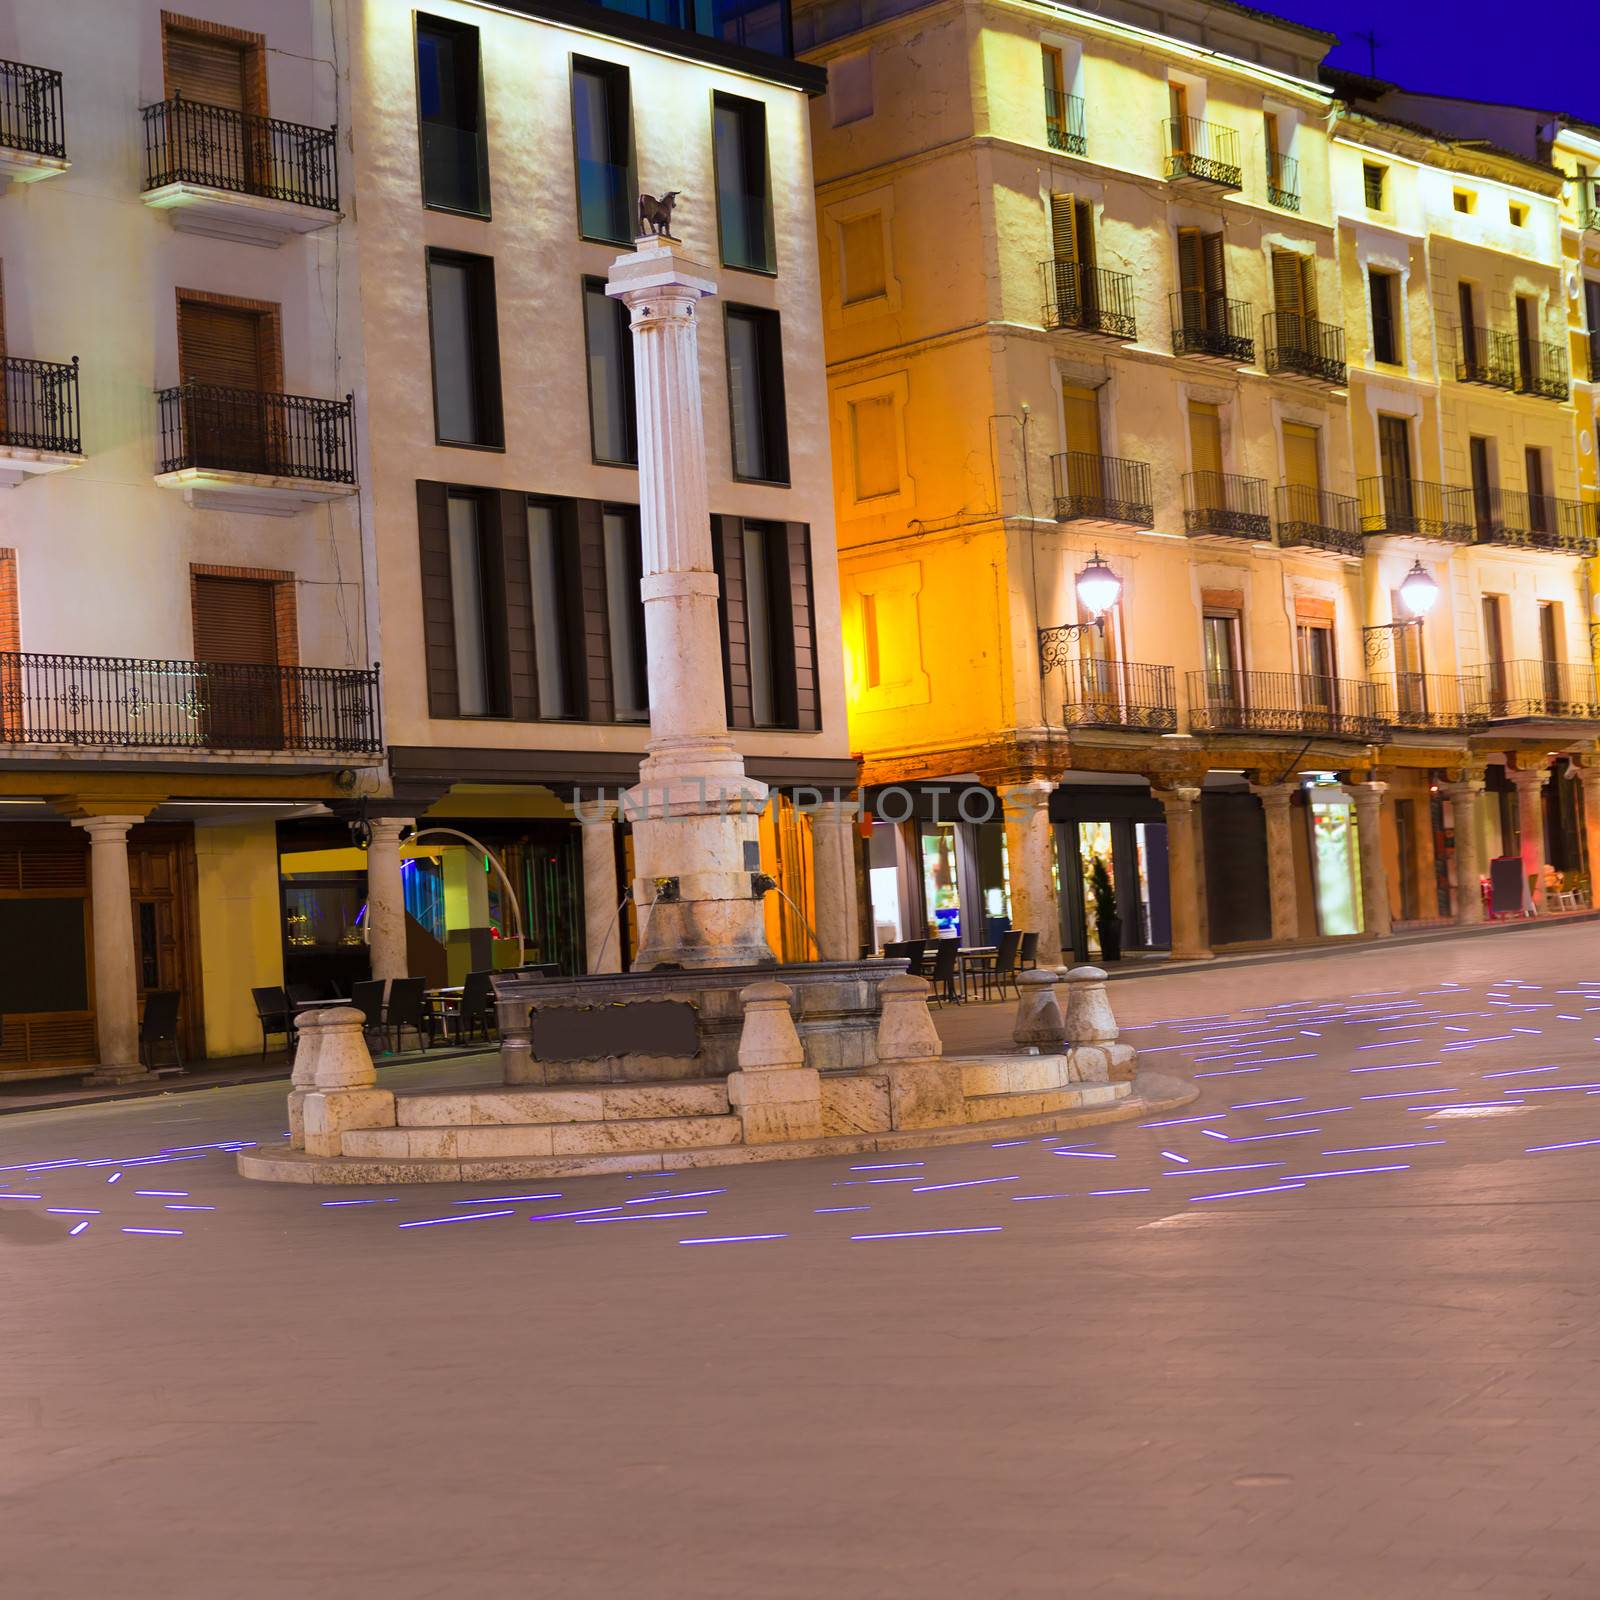 Aragon Teruel plaza el torico in Carlos Castel square of Spain